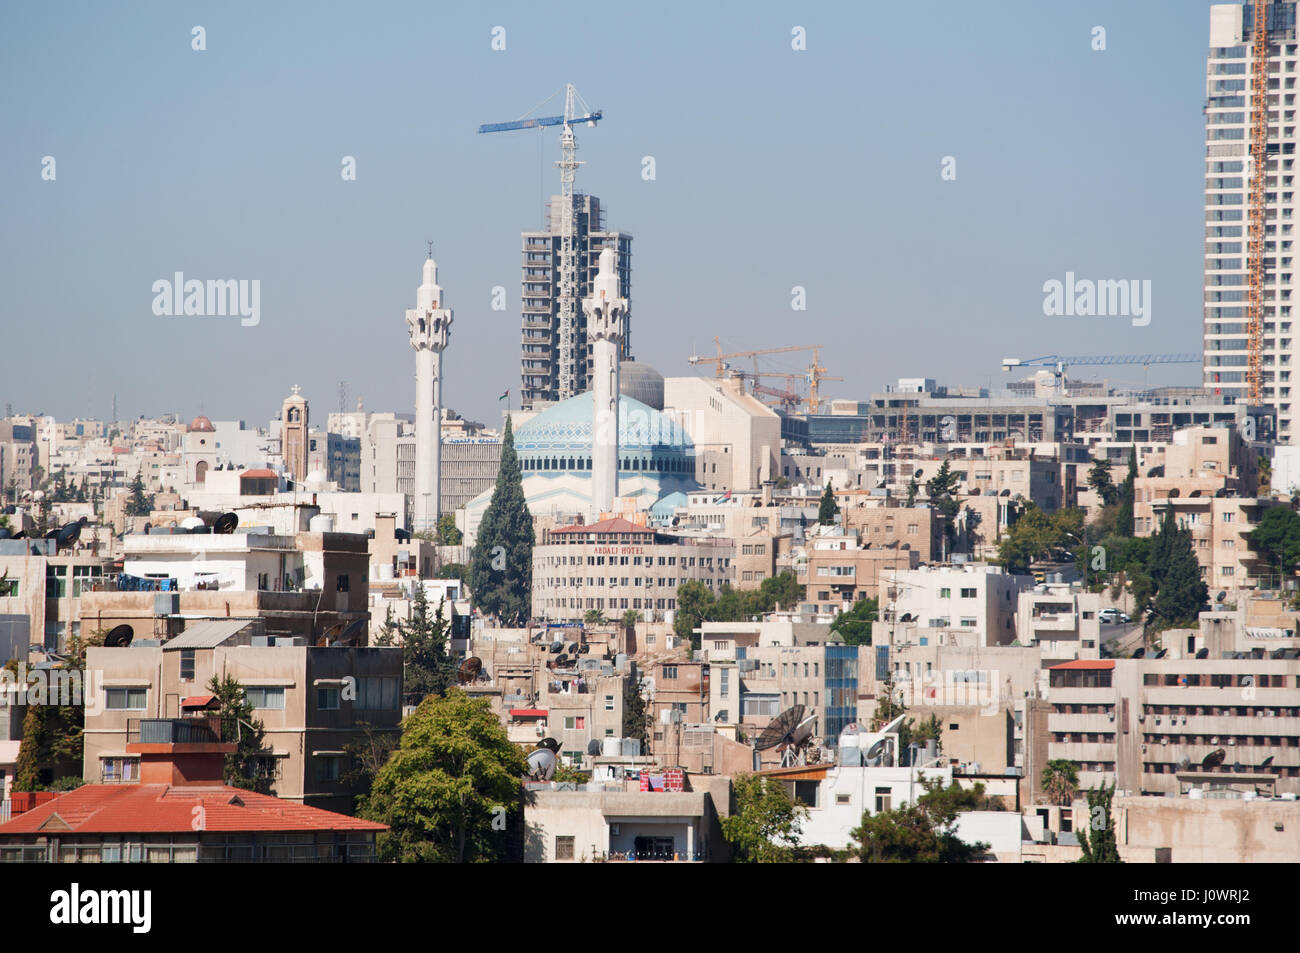 Jordanie : l'horizon de Amman, la capitale et ville la plus peuplée du Royaume hachémite de Jordanie, avec les bâtiments, les palais et les maisons Banque D'Images